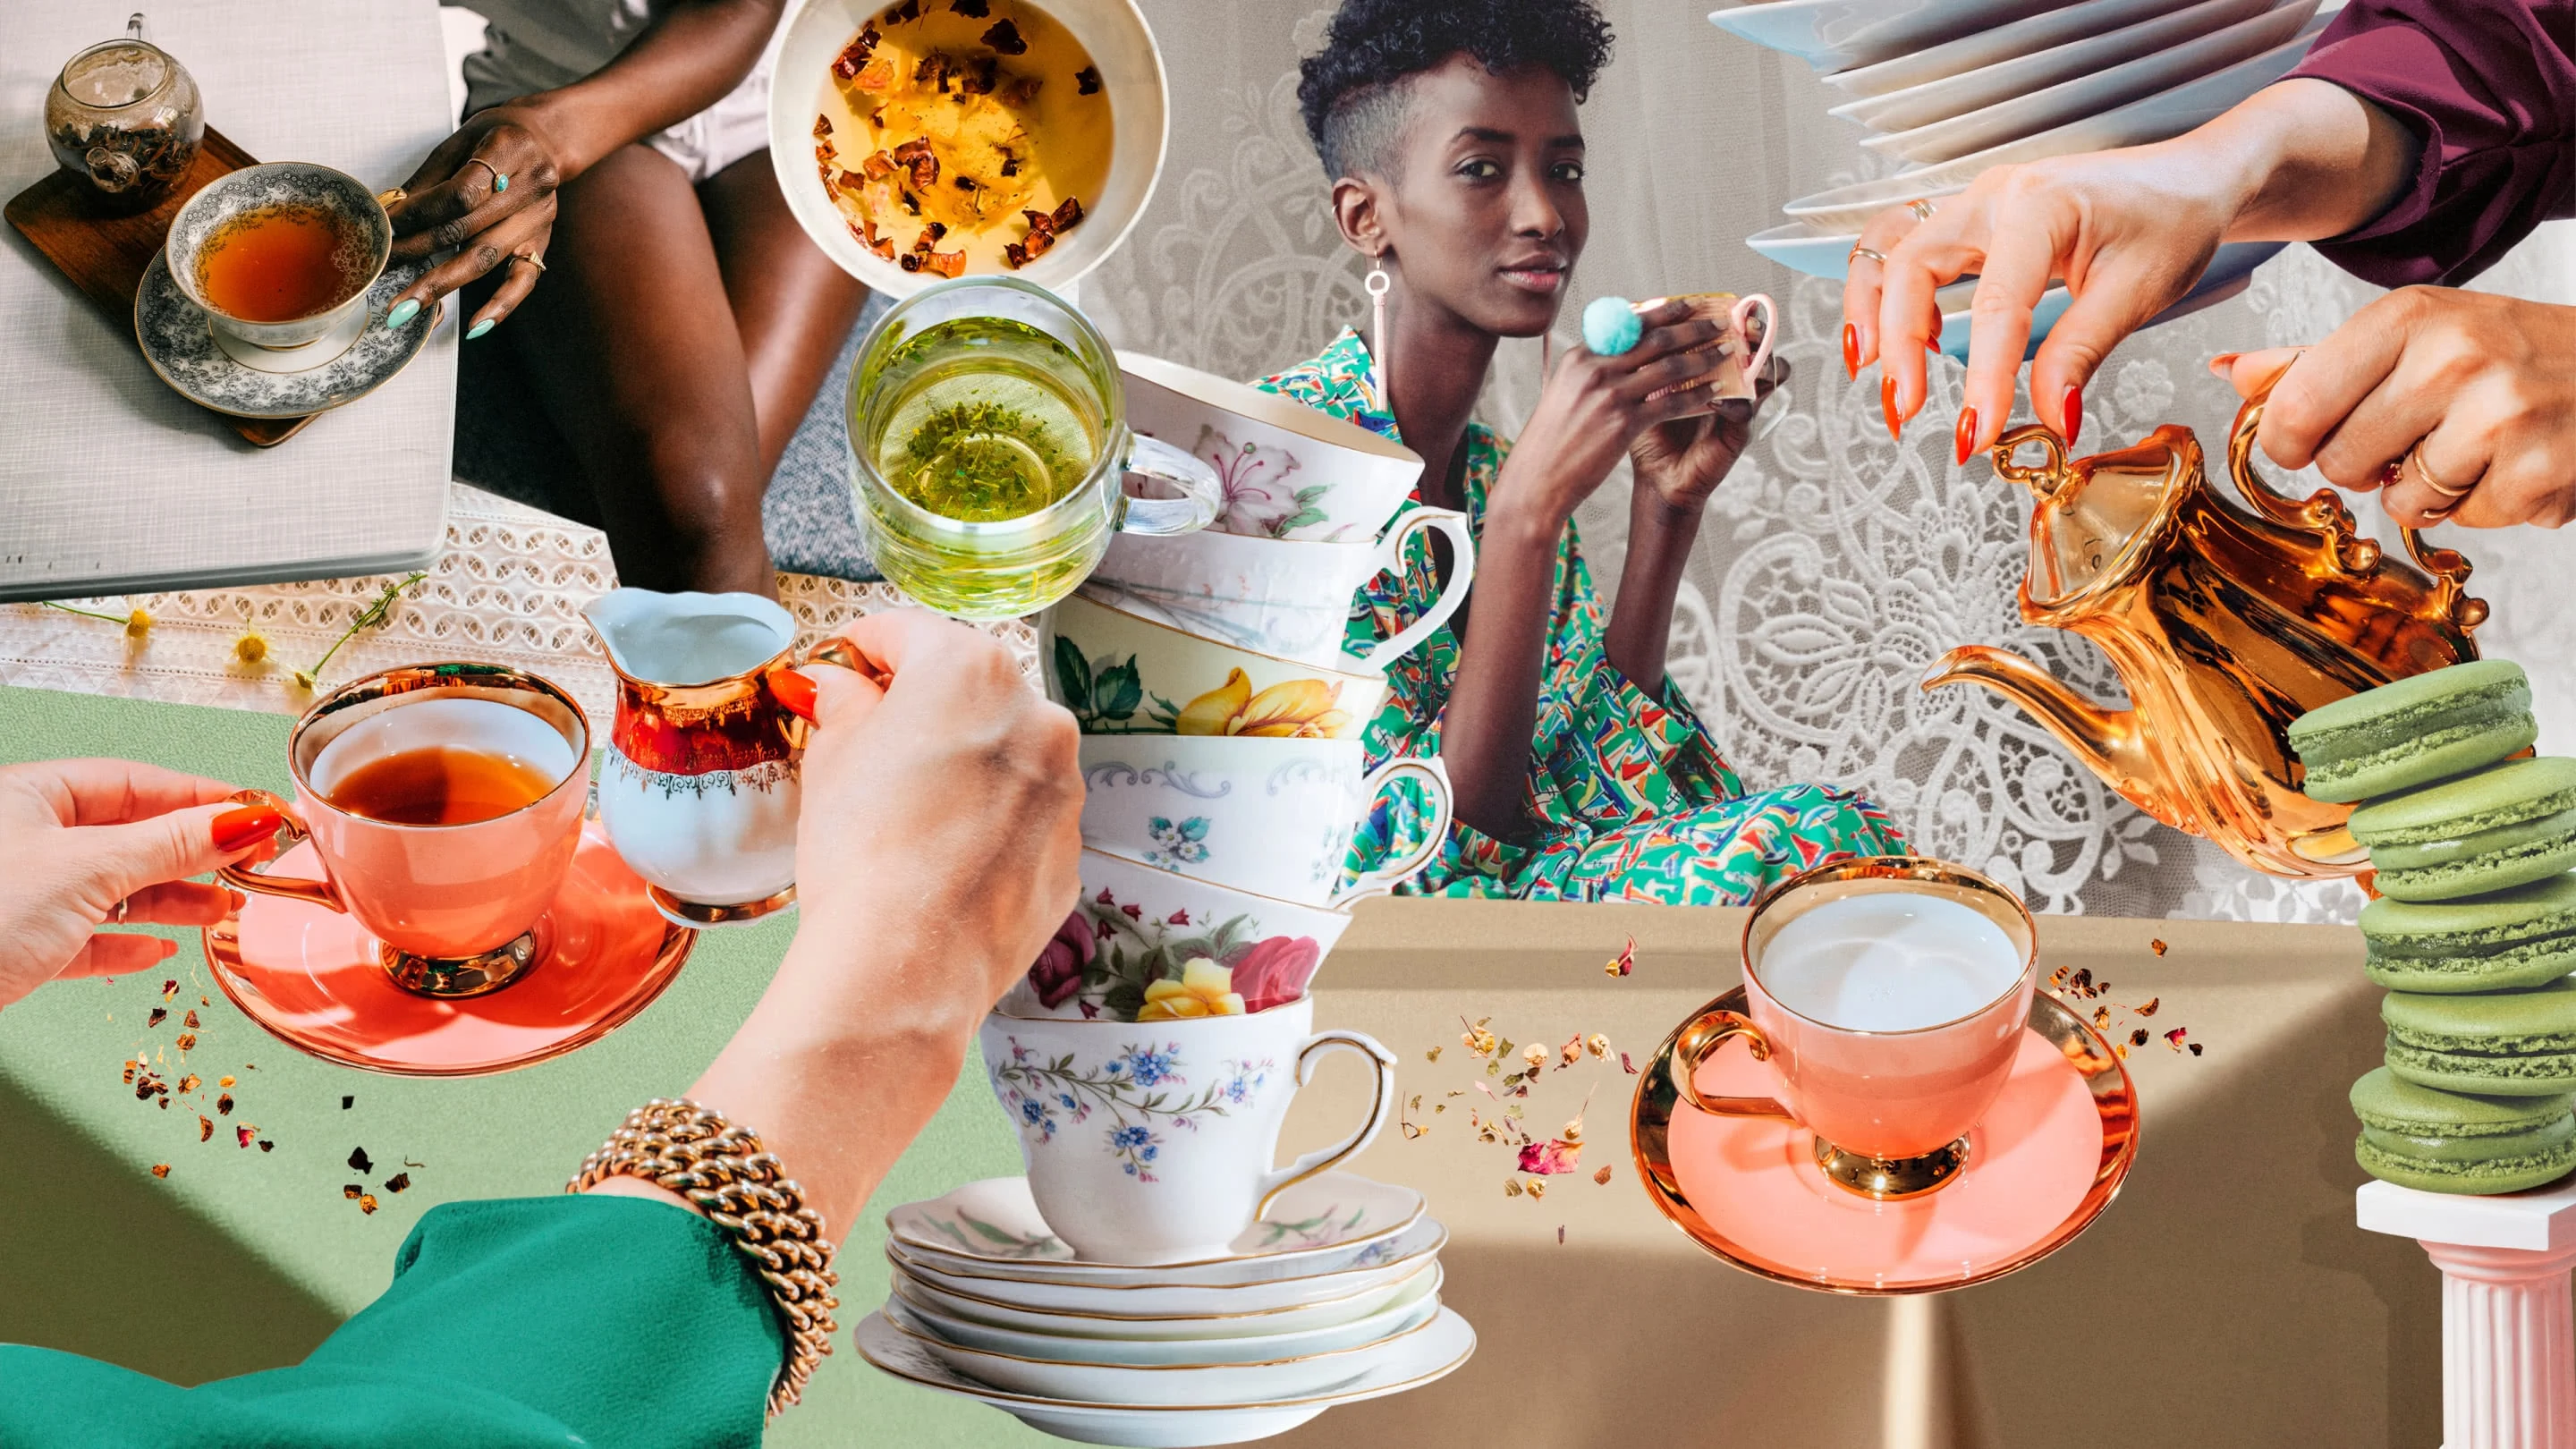 Collage colorido con tazas de té y platos antiguos y macarrones verdes apilados, varias manos con jarras para la leche sobre tazas de té ámbar y una mujer de piel oscura vestida de verde en el centro, mirando a la cámara y sosteniendo una taza dorada.